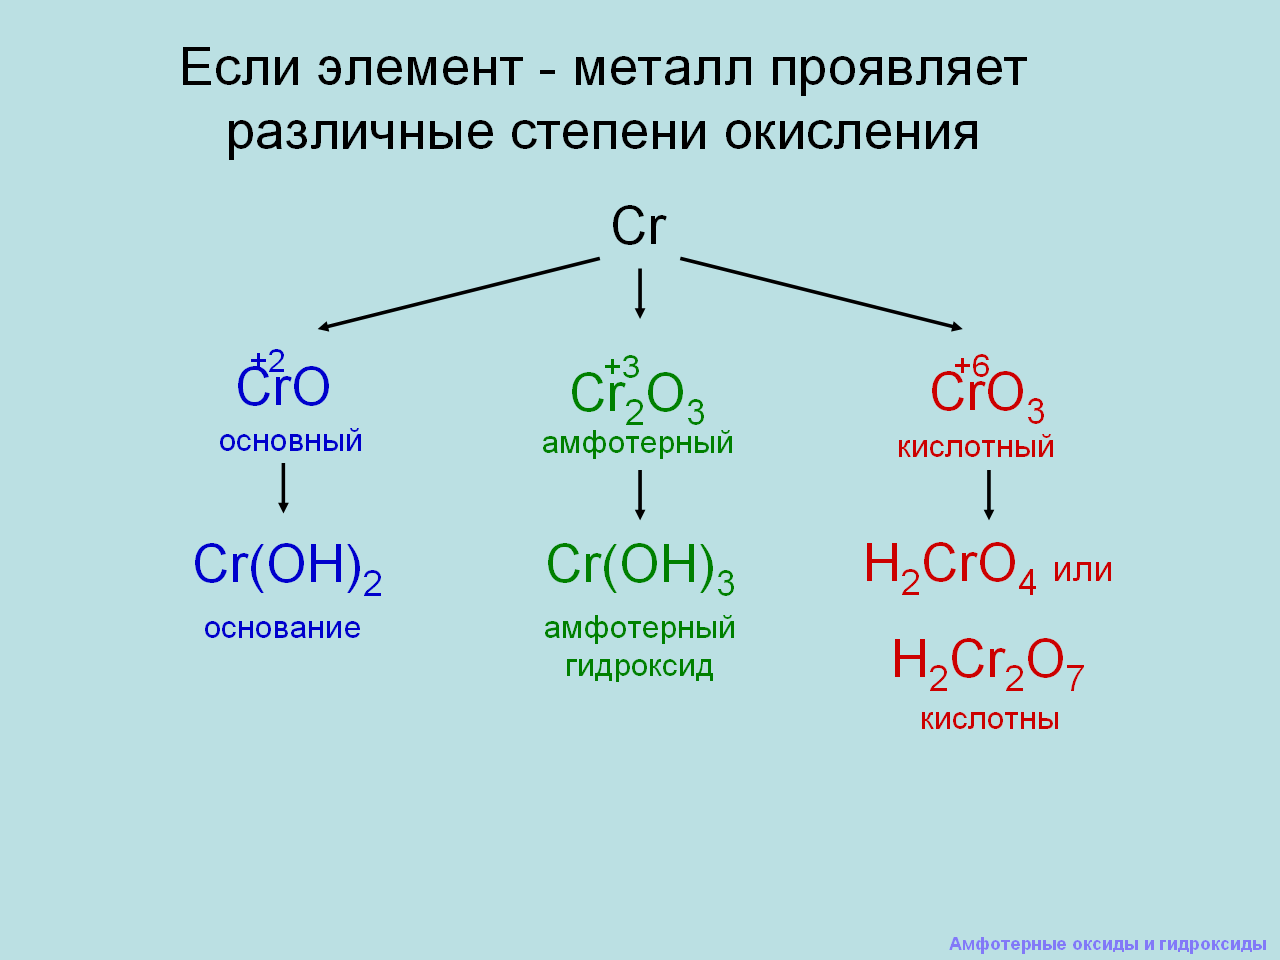 Какой из элементов может образовать амфотерный. Амфотерные оксиды и гидроксиды 9 класс объяснение. Химия 9 класс амфотерные оксиды. Амфотерные оксиды и гидроксиды 9 класс химия. Урок химия амфотерные оксиды и гидроксиды.